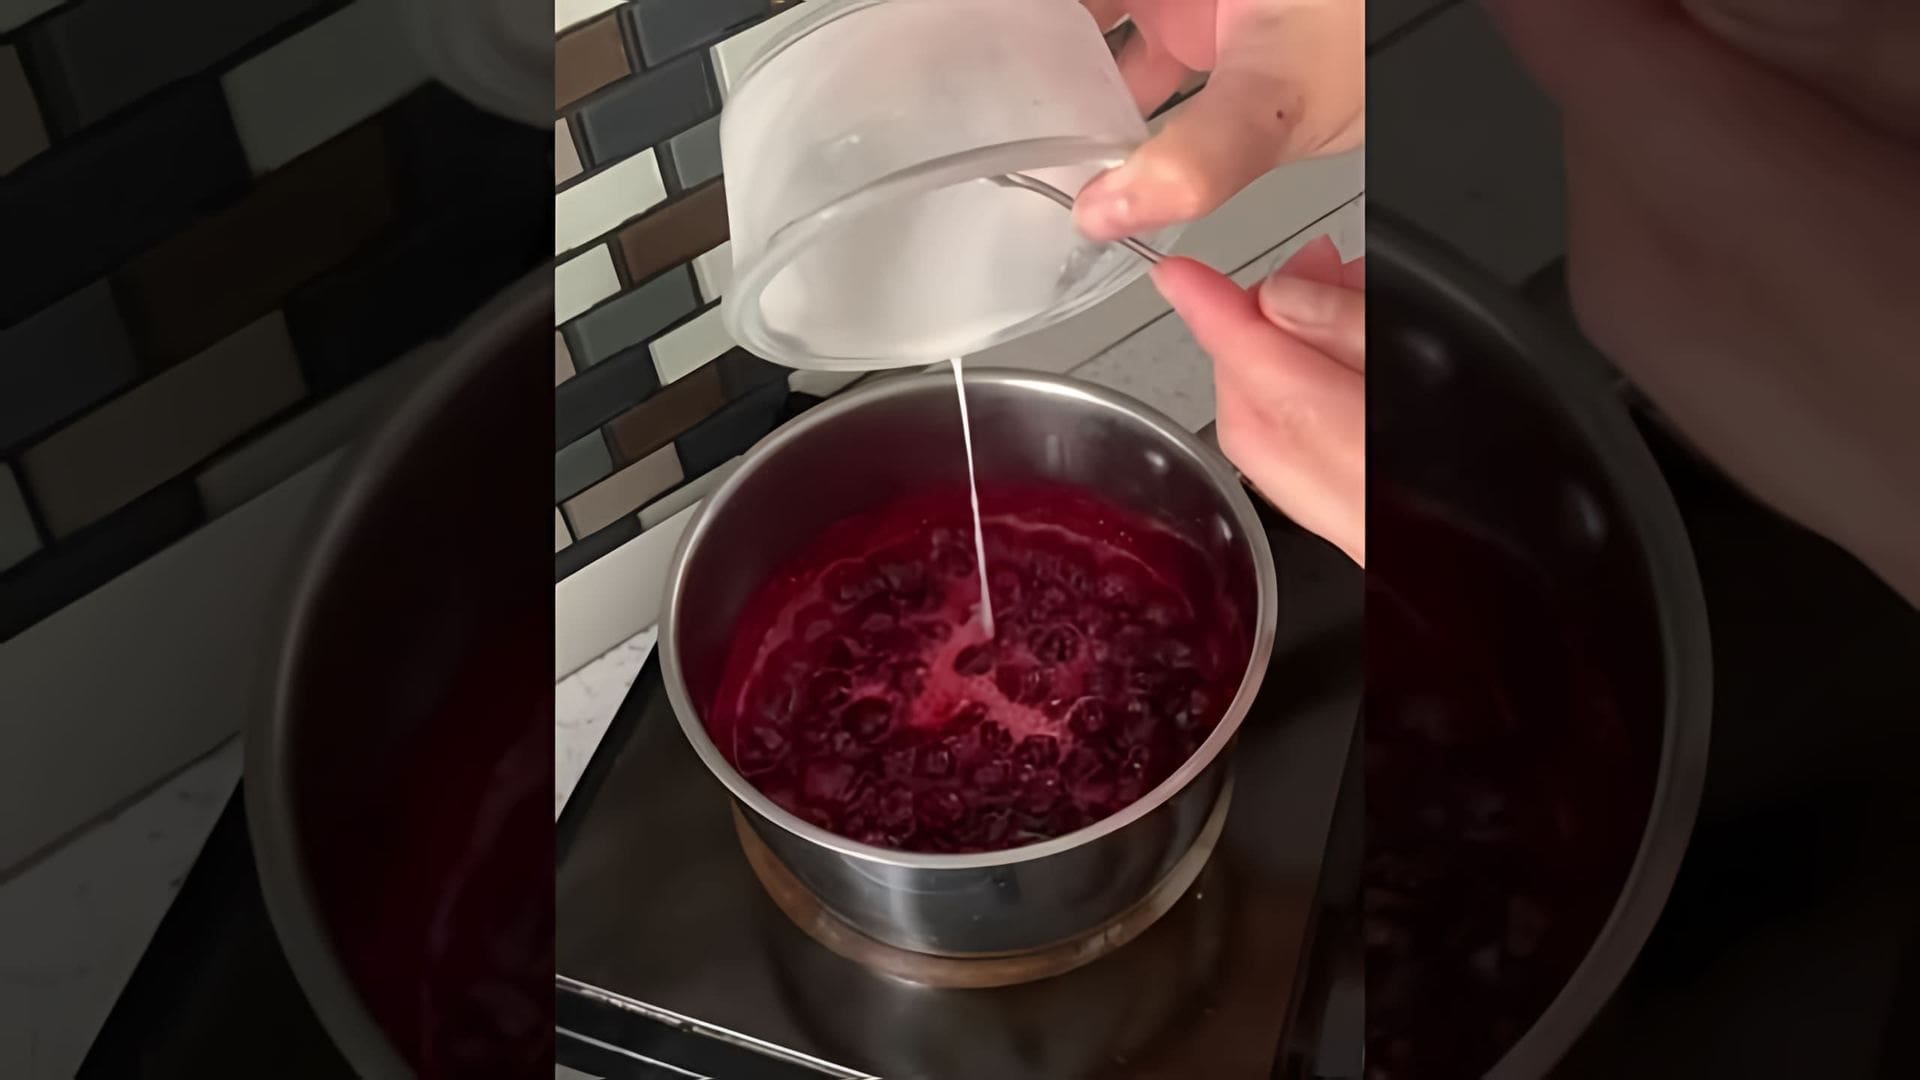 В этом видео демонстрируется рецепт приготовления вишневой начинки для торта или капкейков